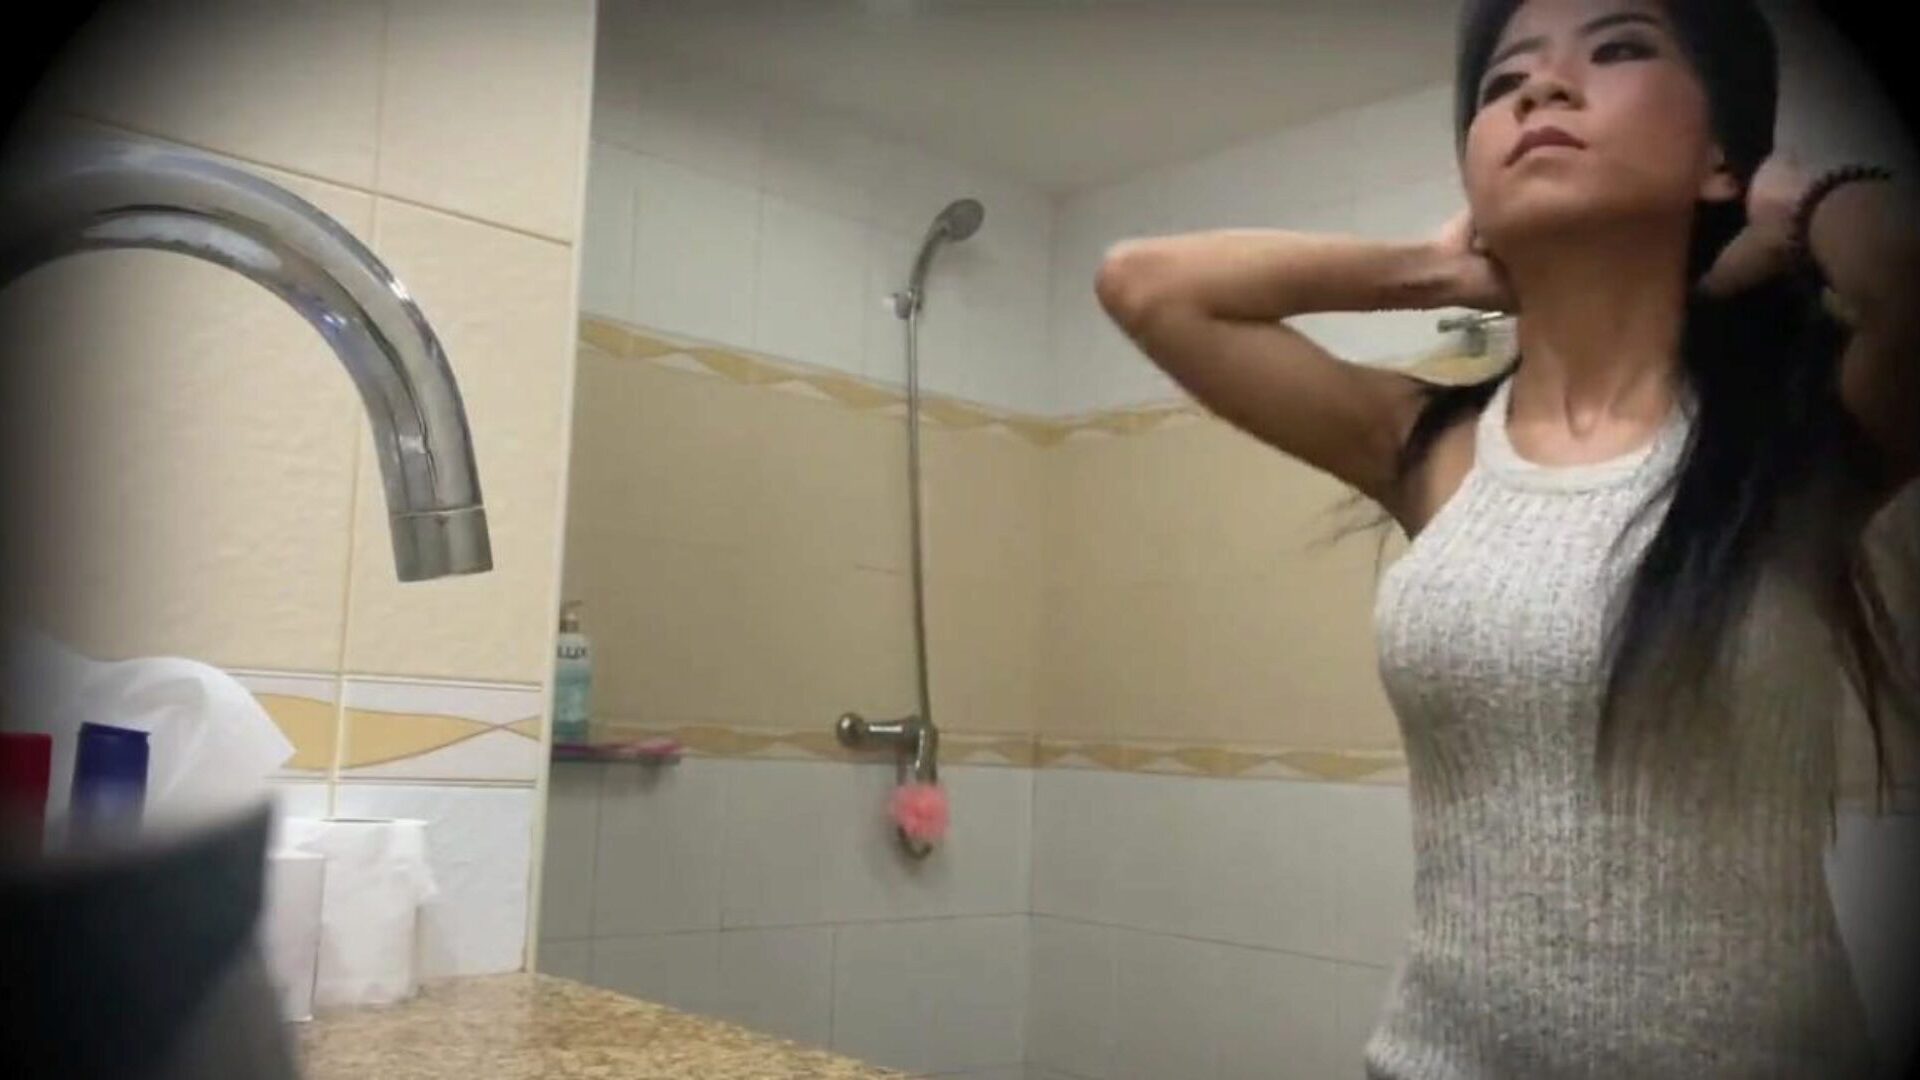 великолепный тайский проститутка трахал на скрытой камерой: порно бф смотреть великолепный тайский проститутка трахал на скрытой видео камеры на xhamster - окончательный выбор бесплатно для всех азиатских подростков HD видео гонзо порно трубки